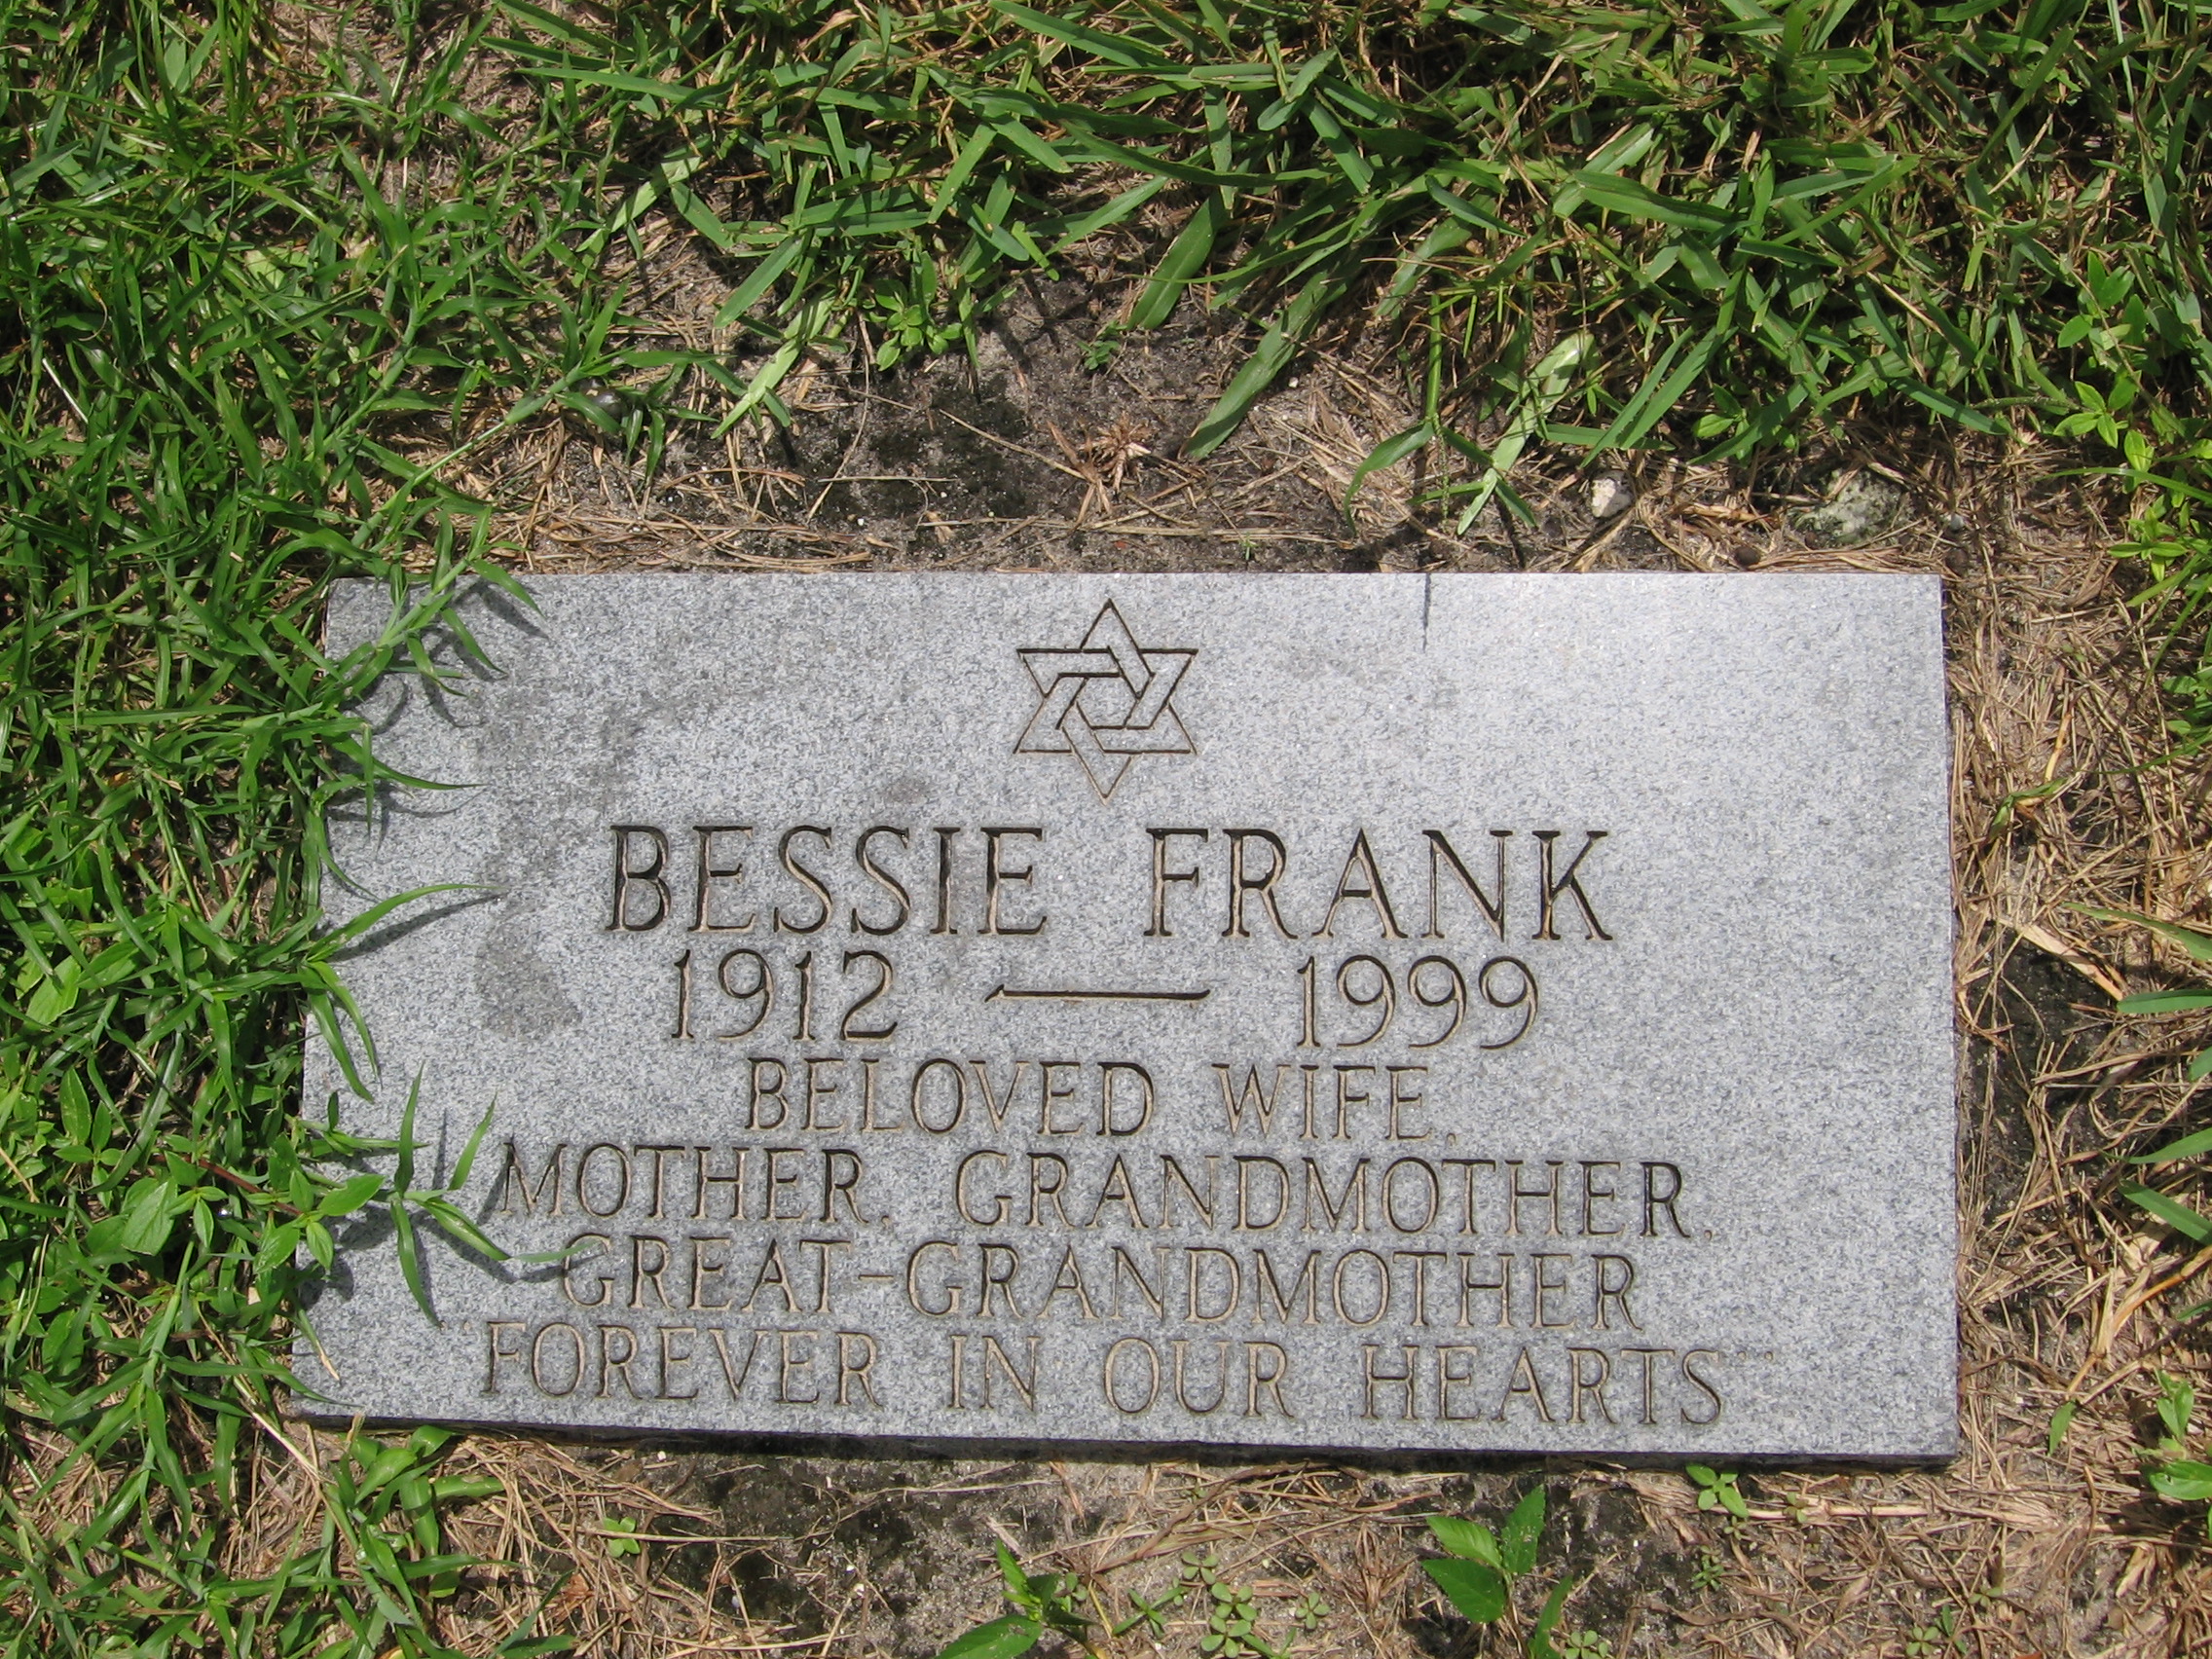 Bessie Frank